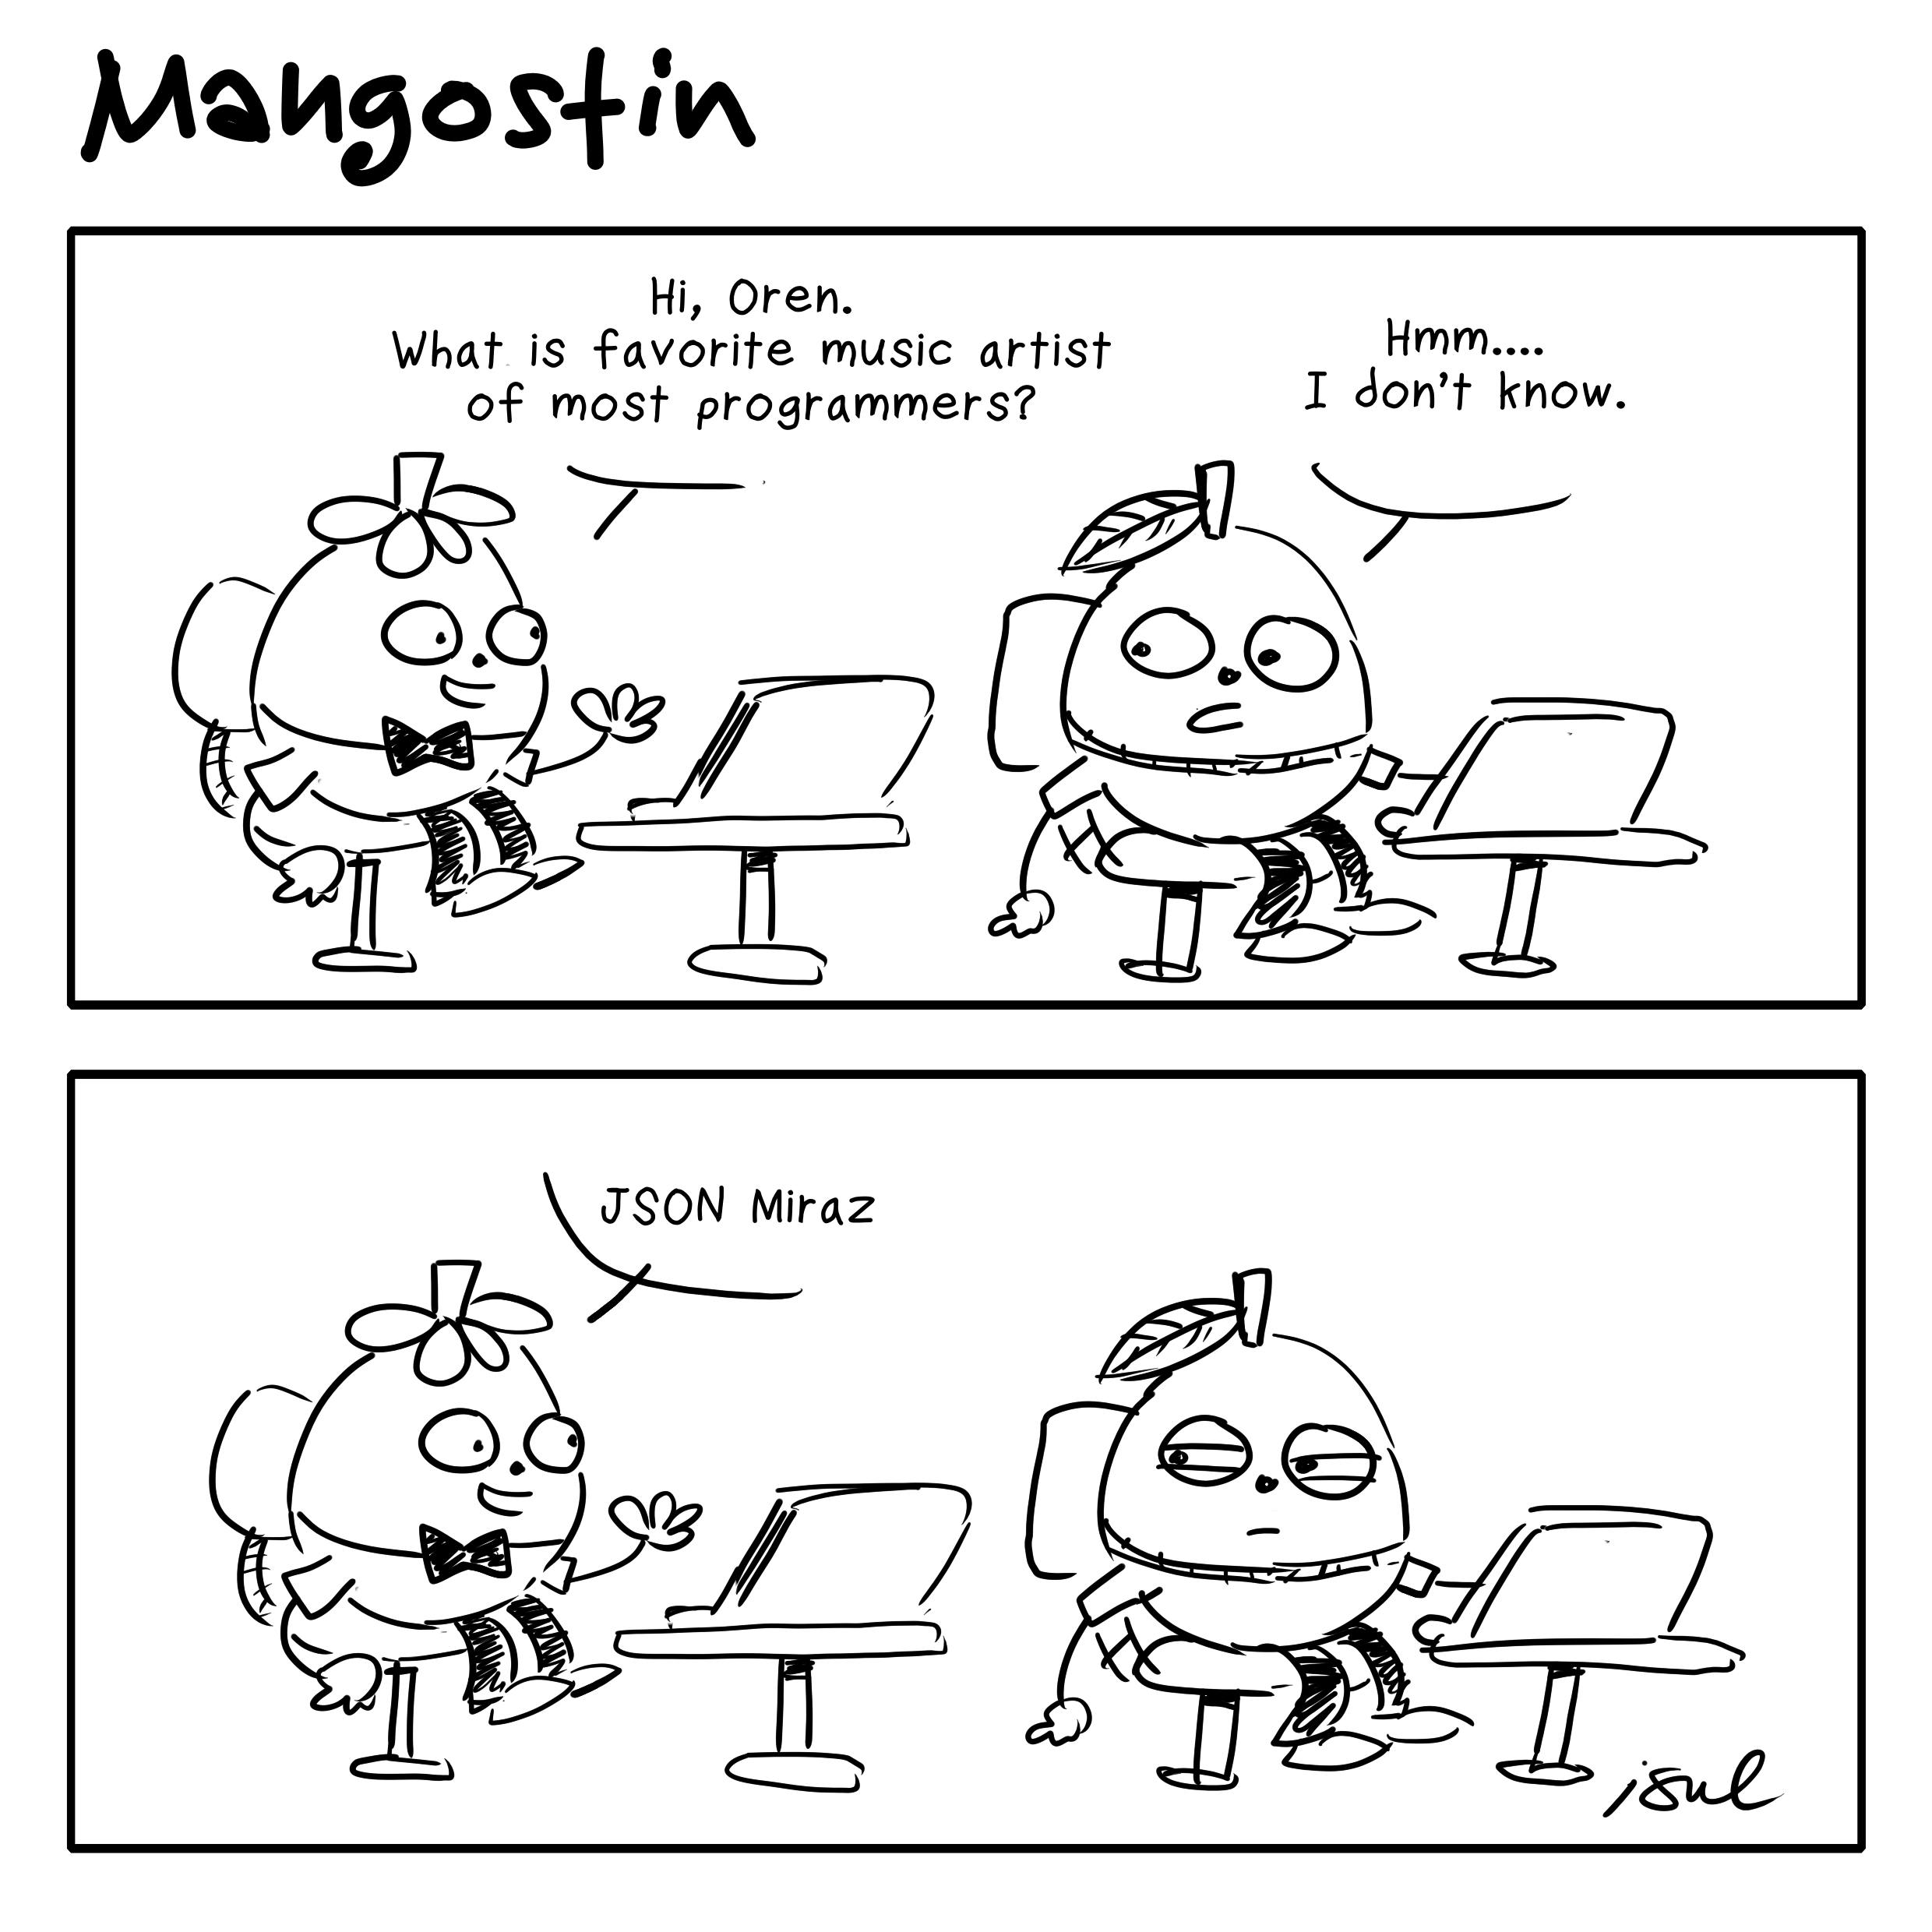 programmers' music artist